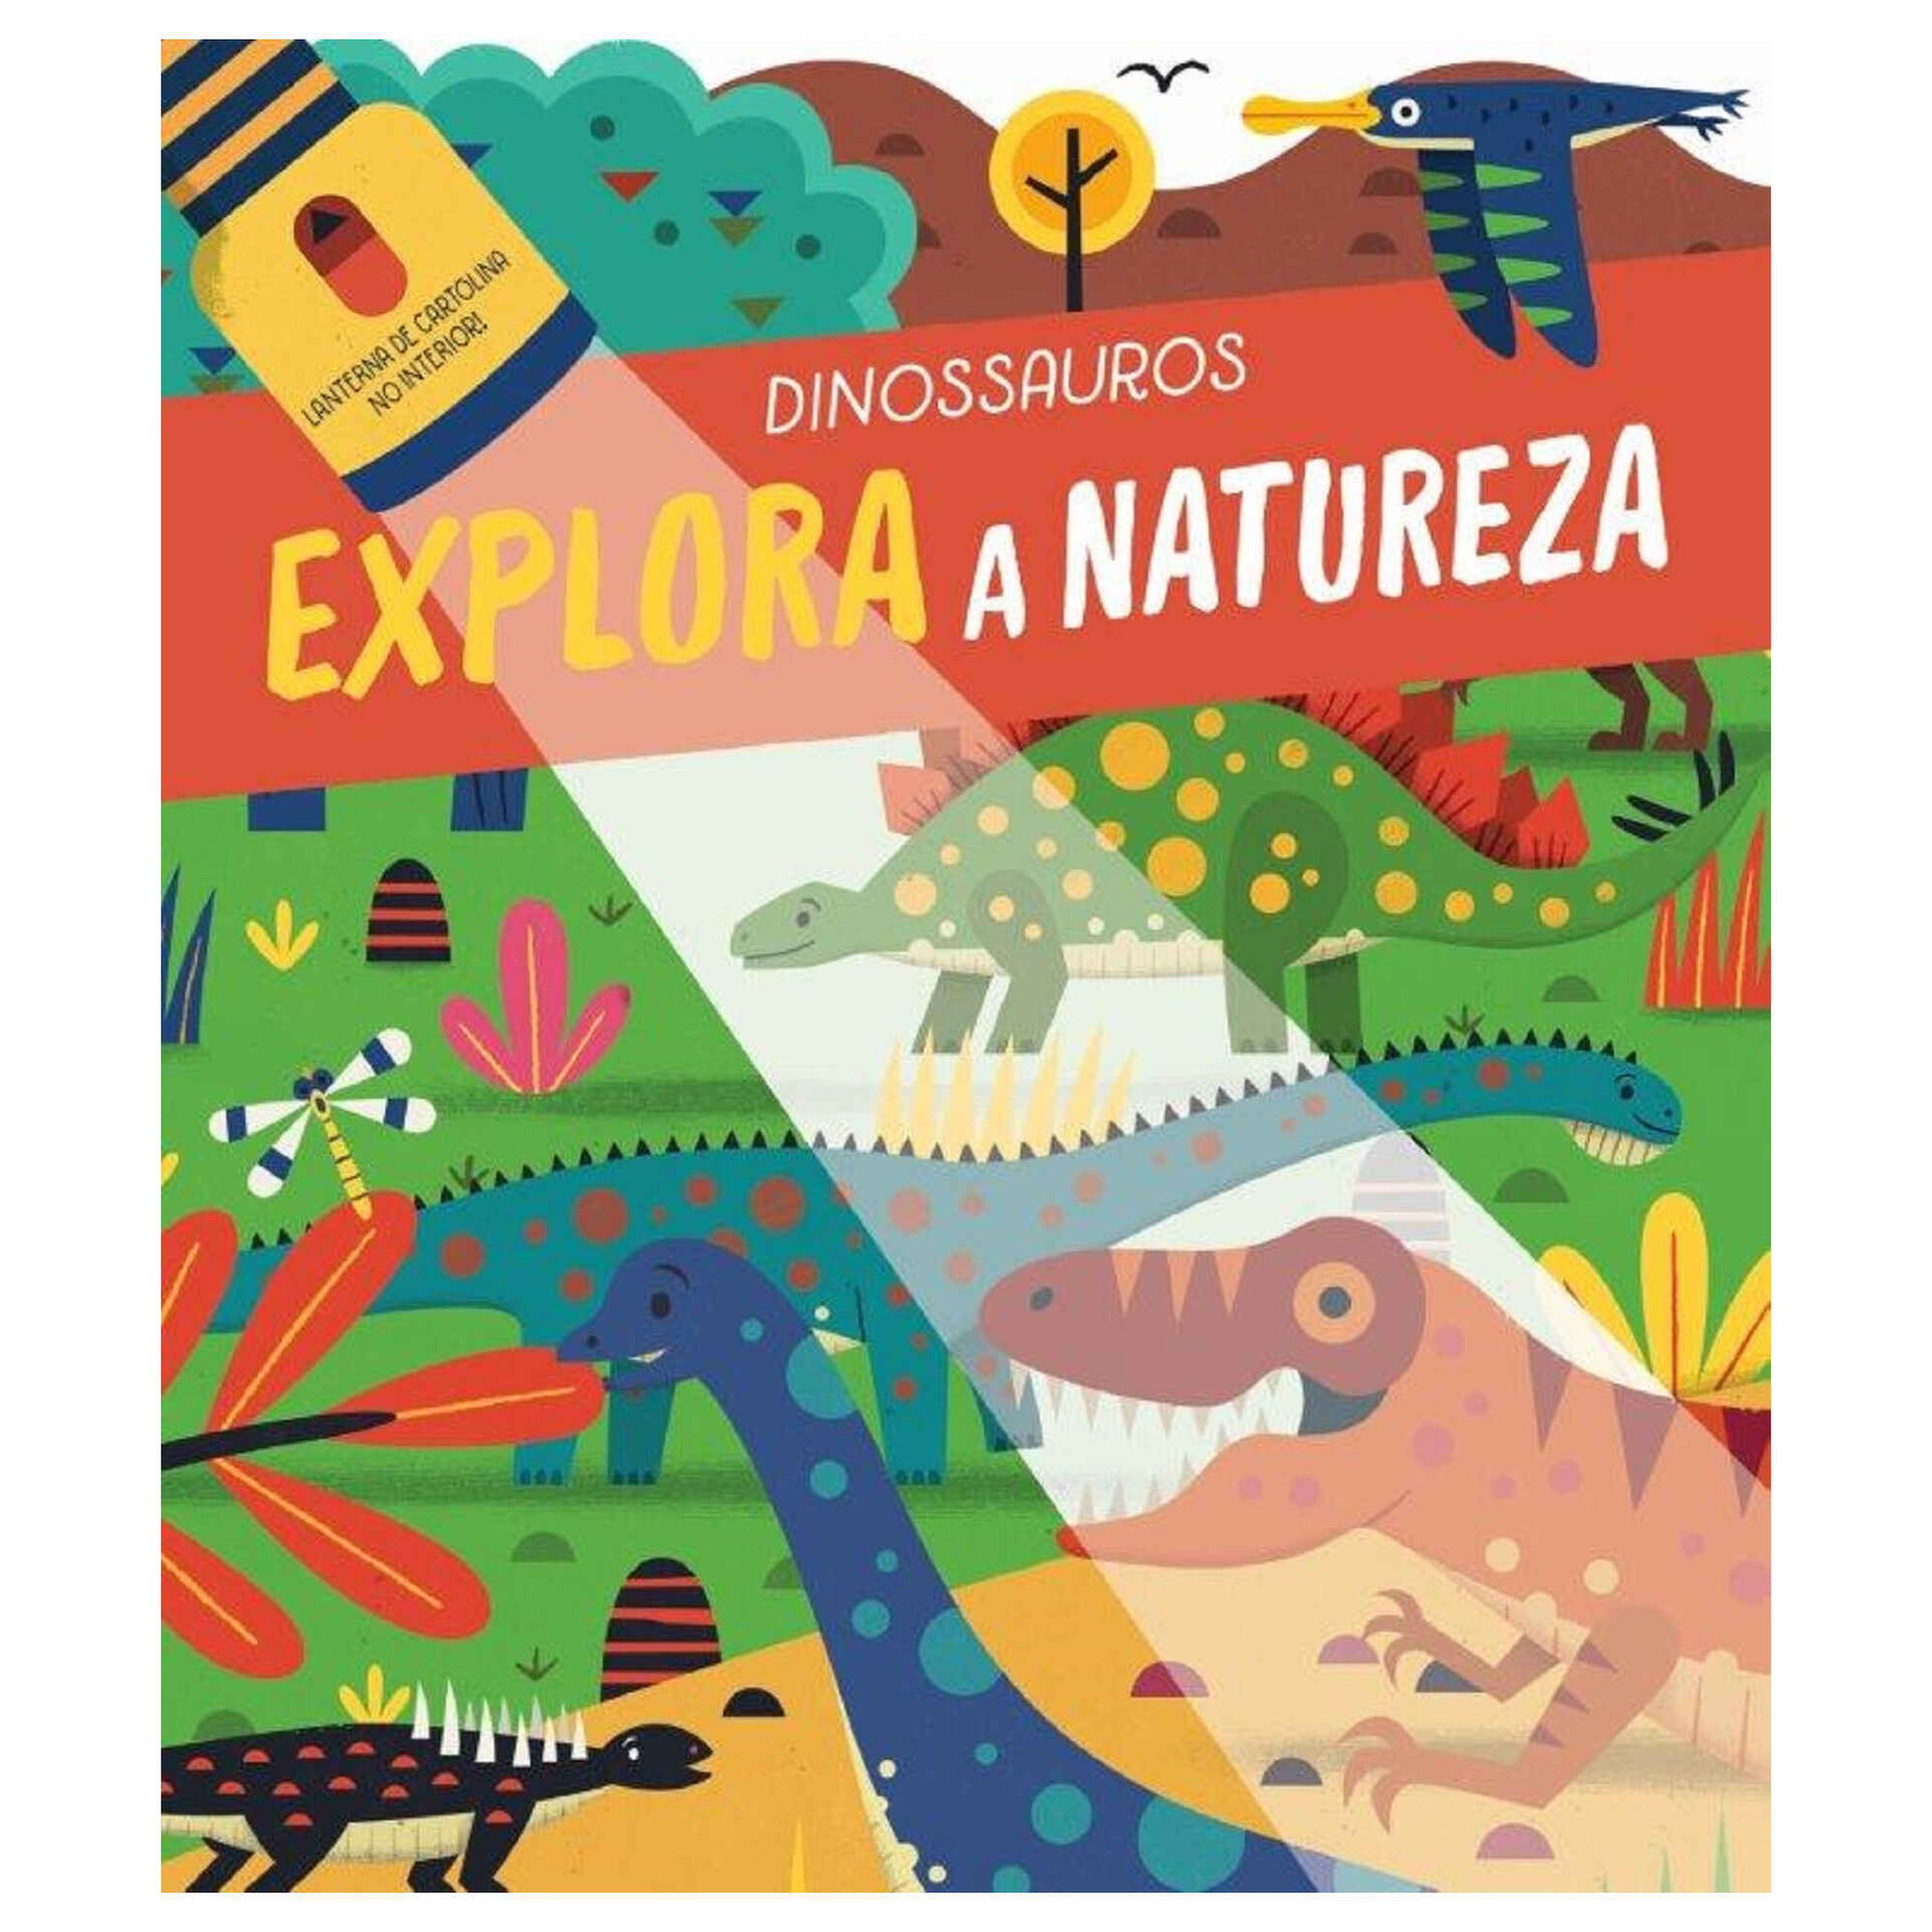 Compre Caderno de Desenhos e Atividades de Dinossauros - Ferramenta  Educativa Ideal para Pais e Professores